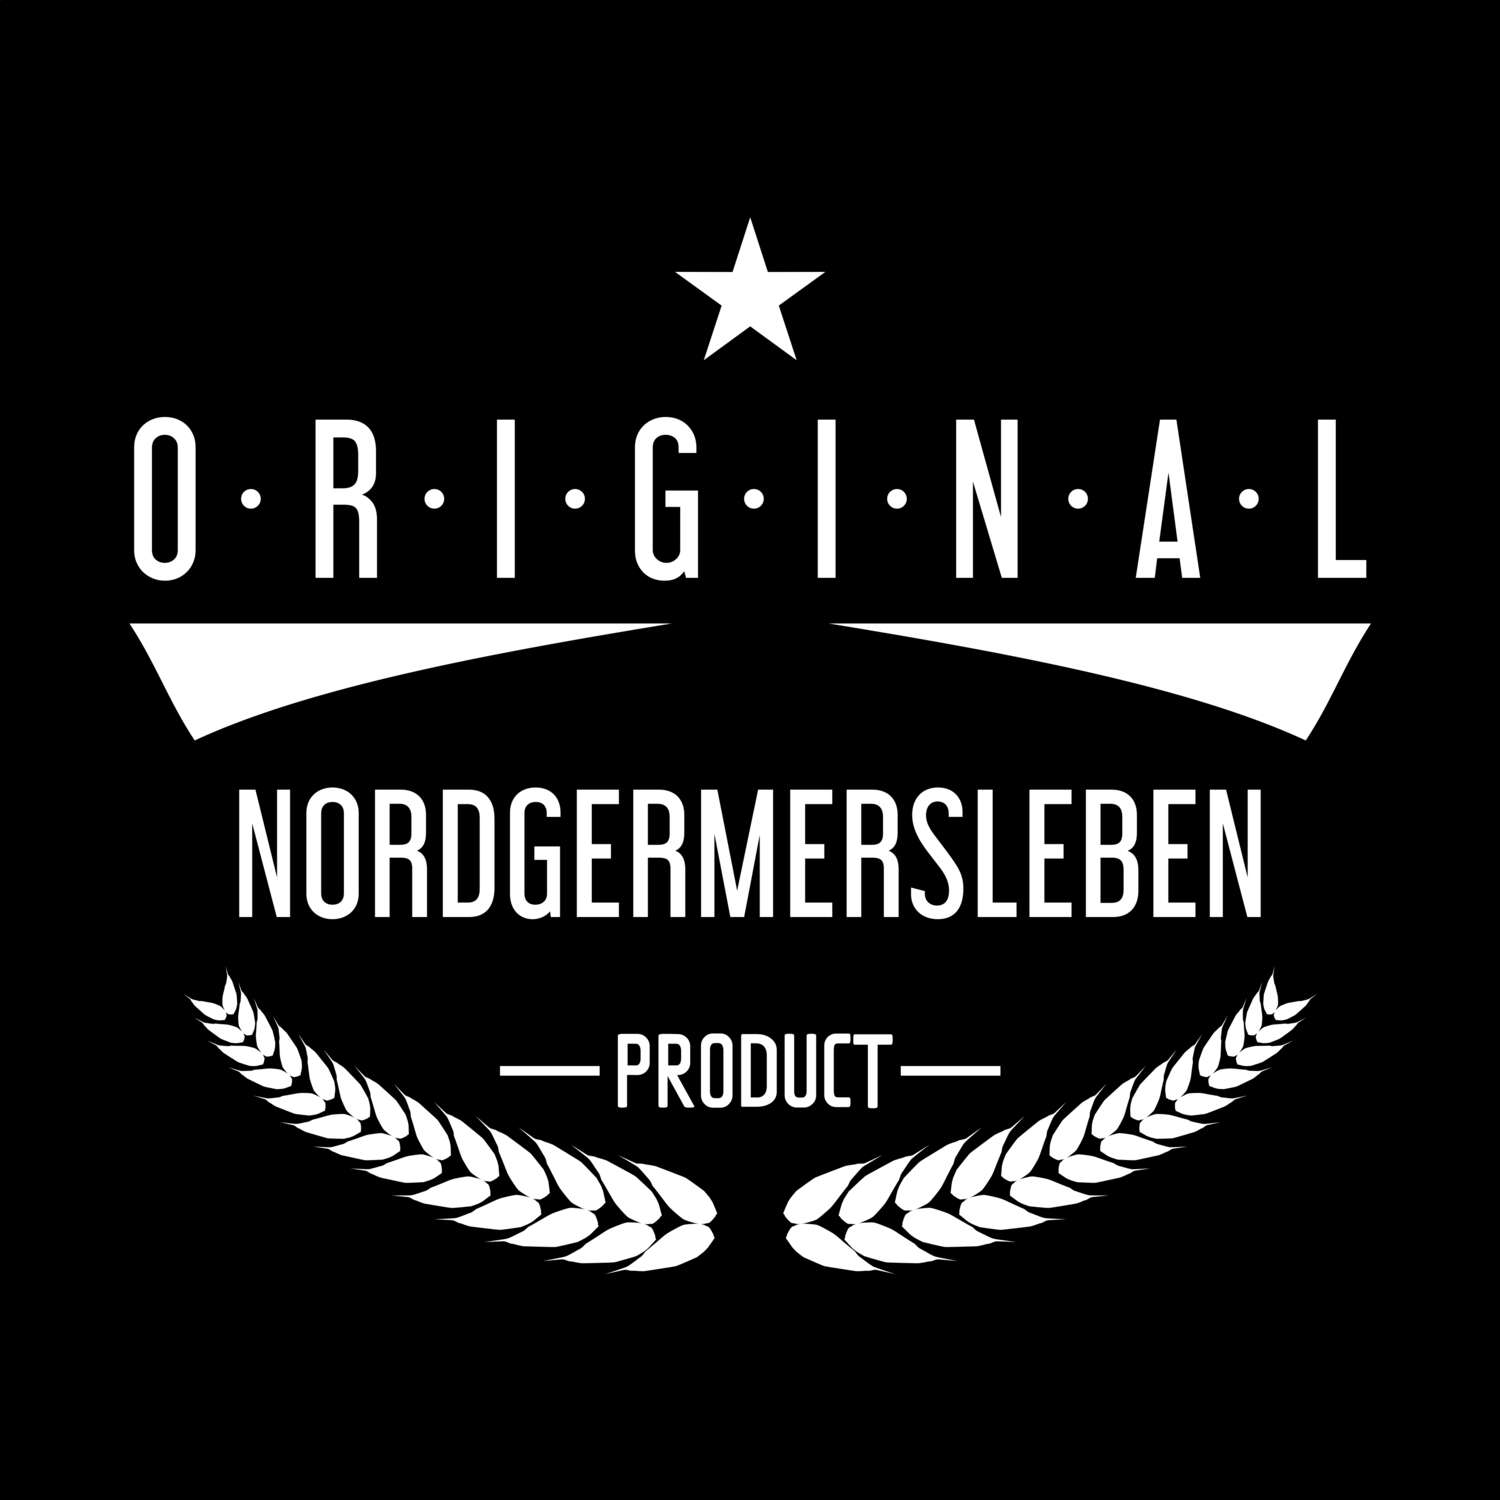 Nordgermersleben T-Shirt »Original Product«